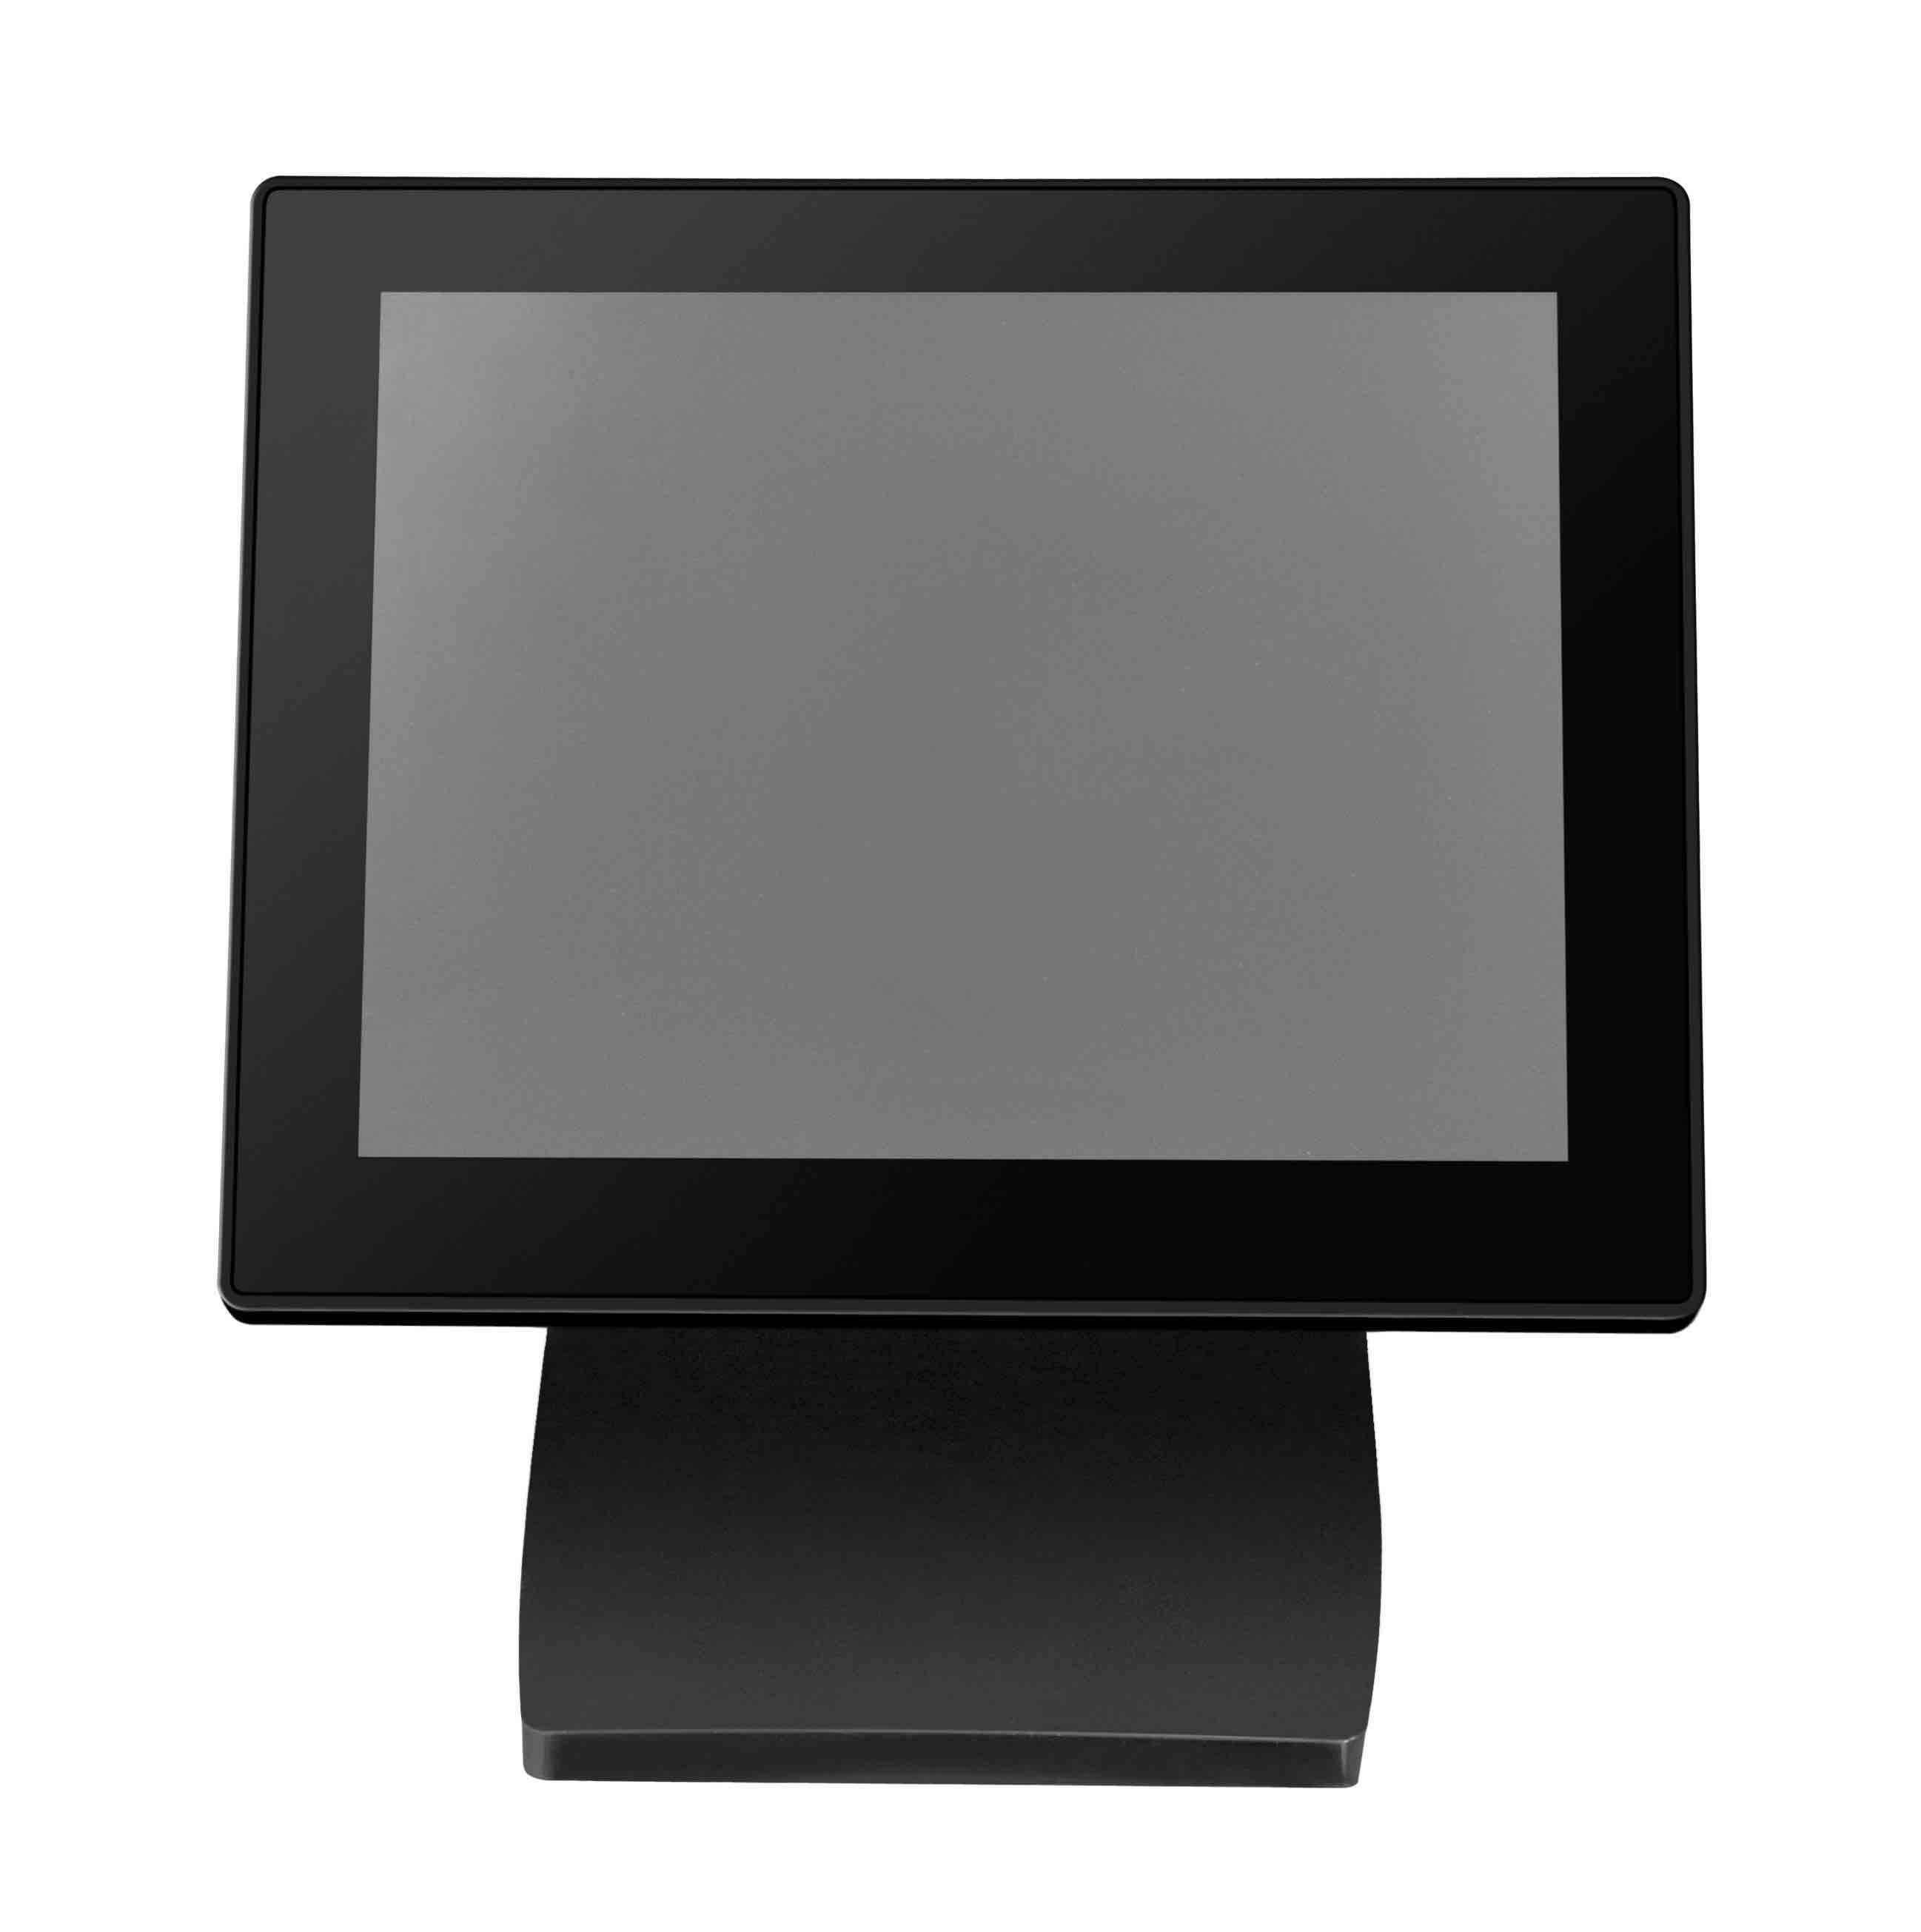 Kundenanzeige 8 Zoll MagicPOS MP080VG mit Schutzglas, schwarz, VGA 15polig, große Anzeige für Werbef